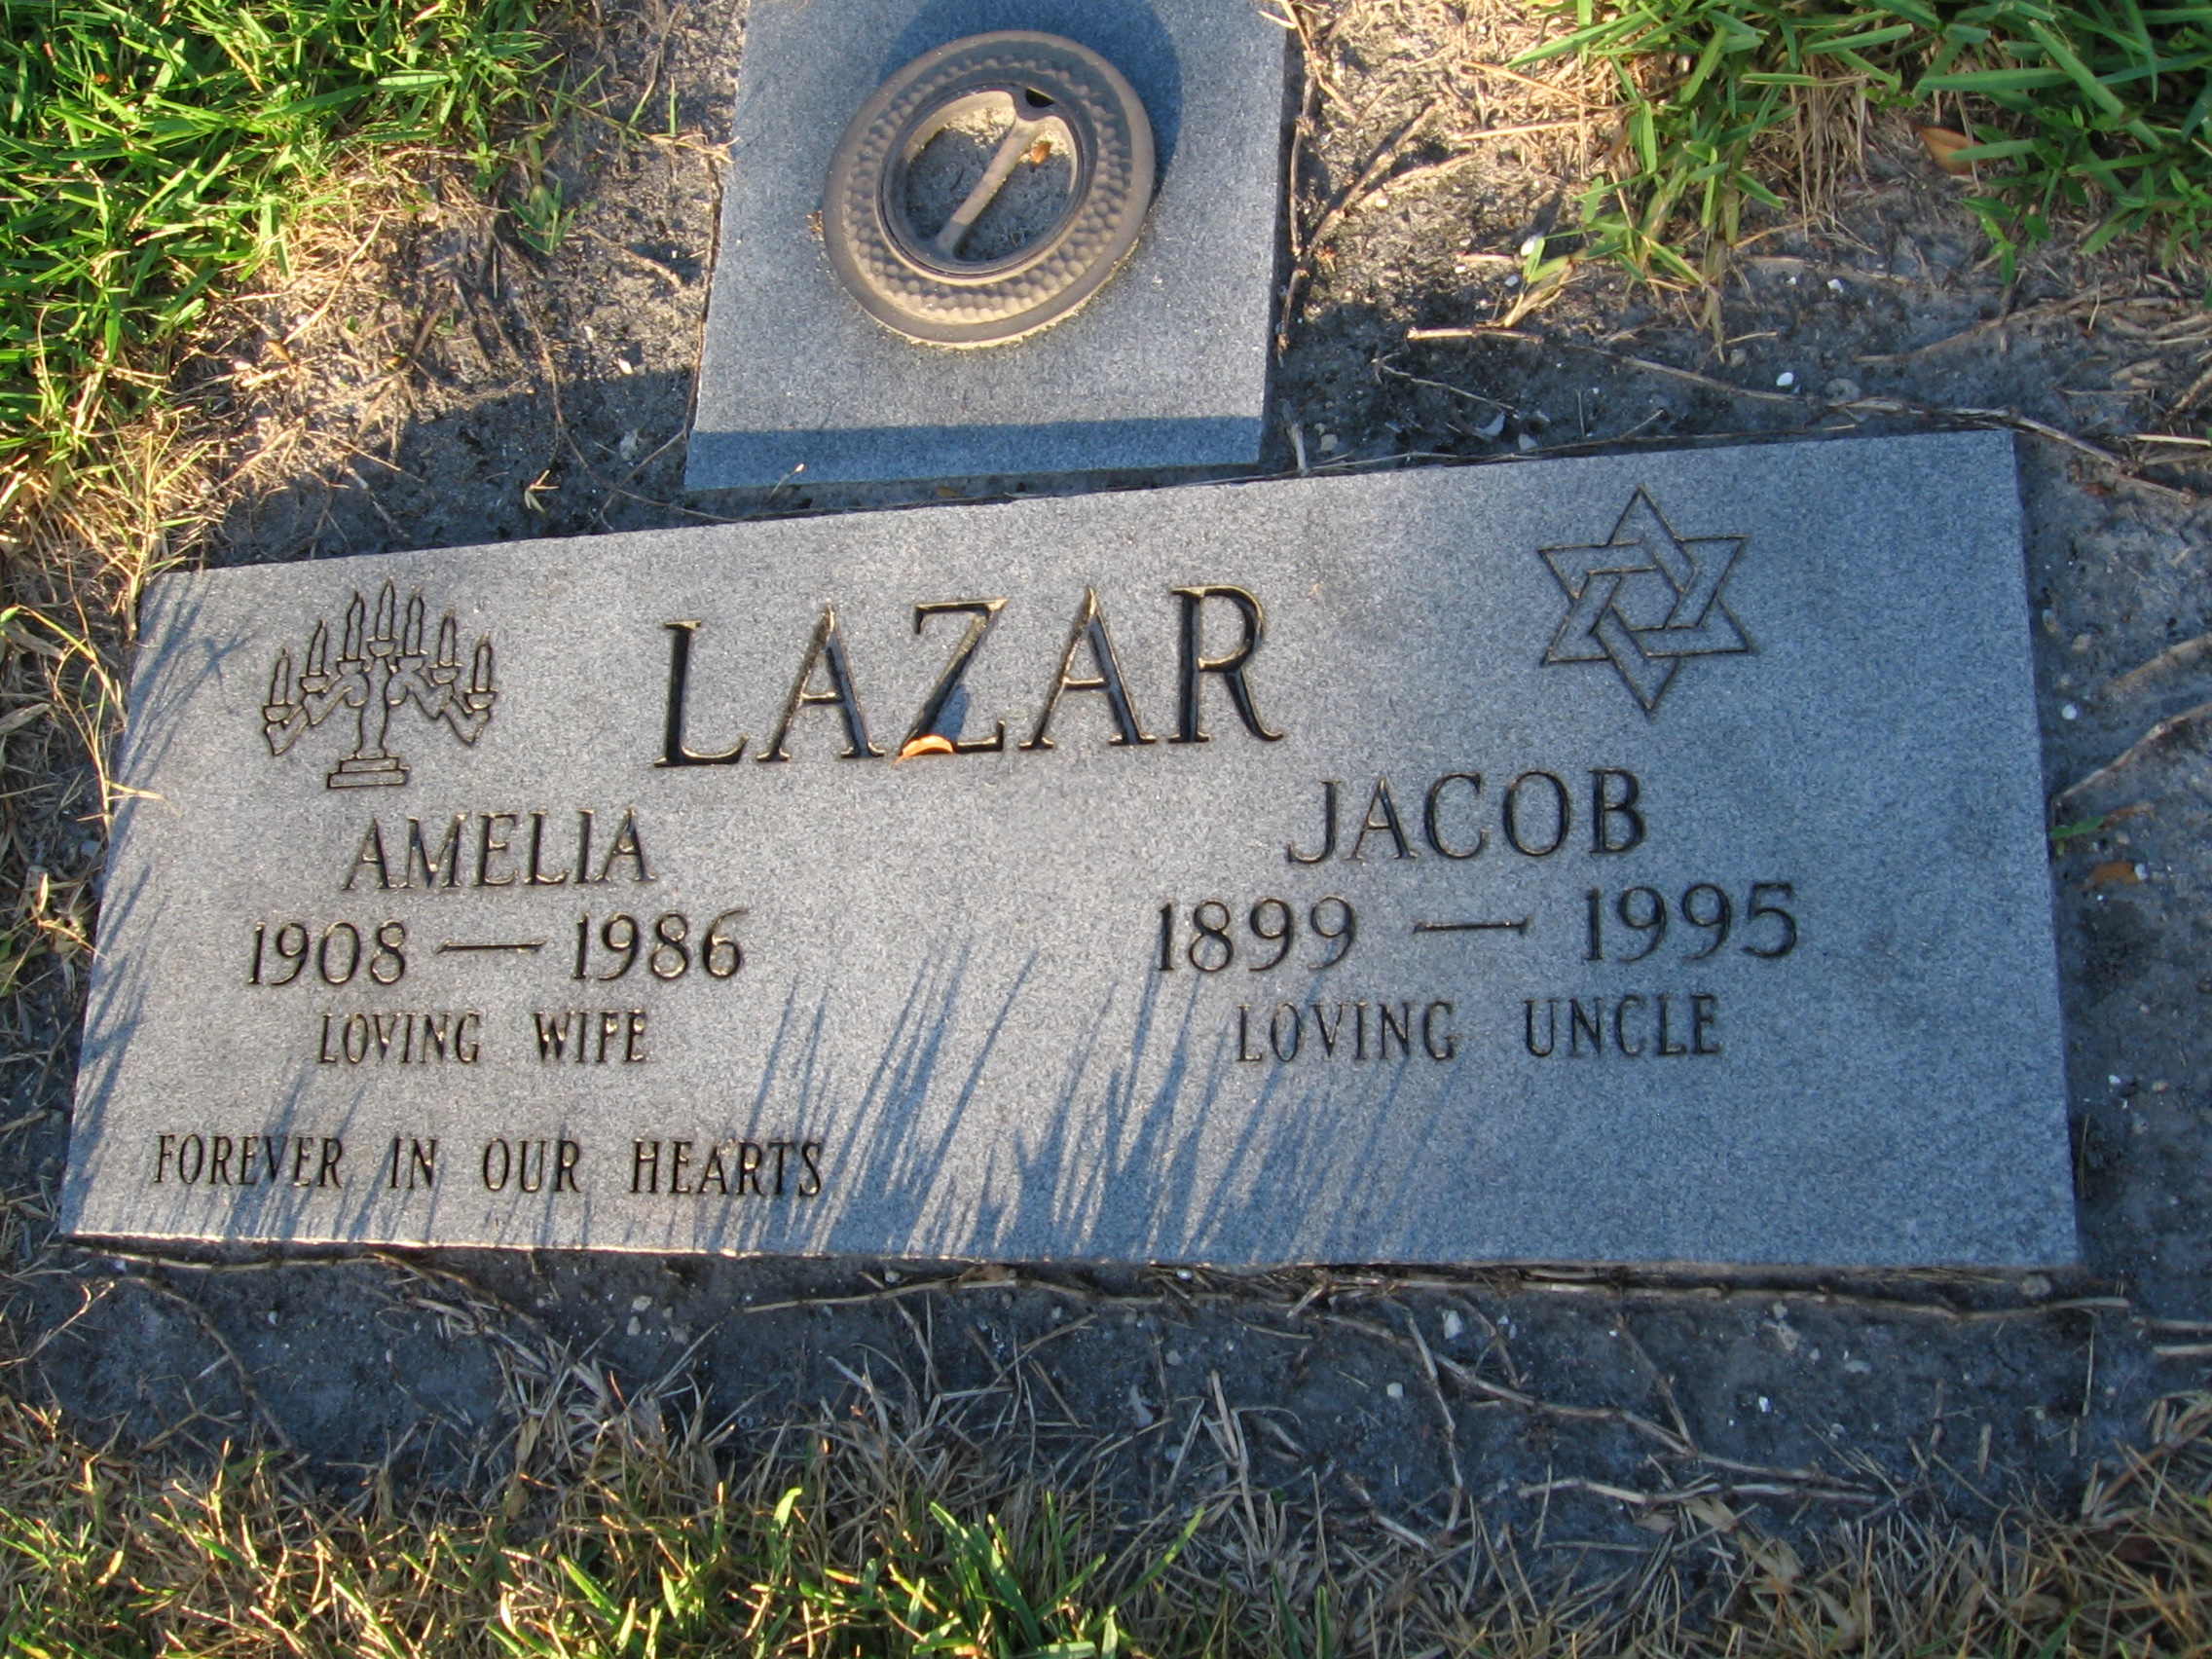 Jacob Lazar